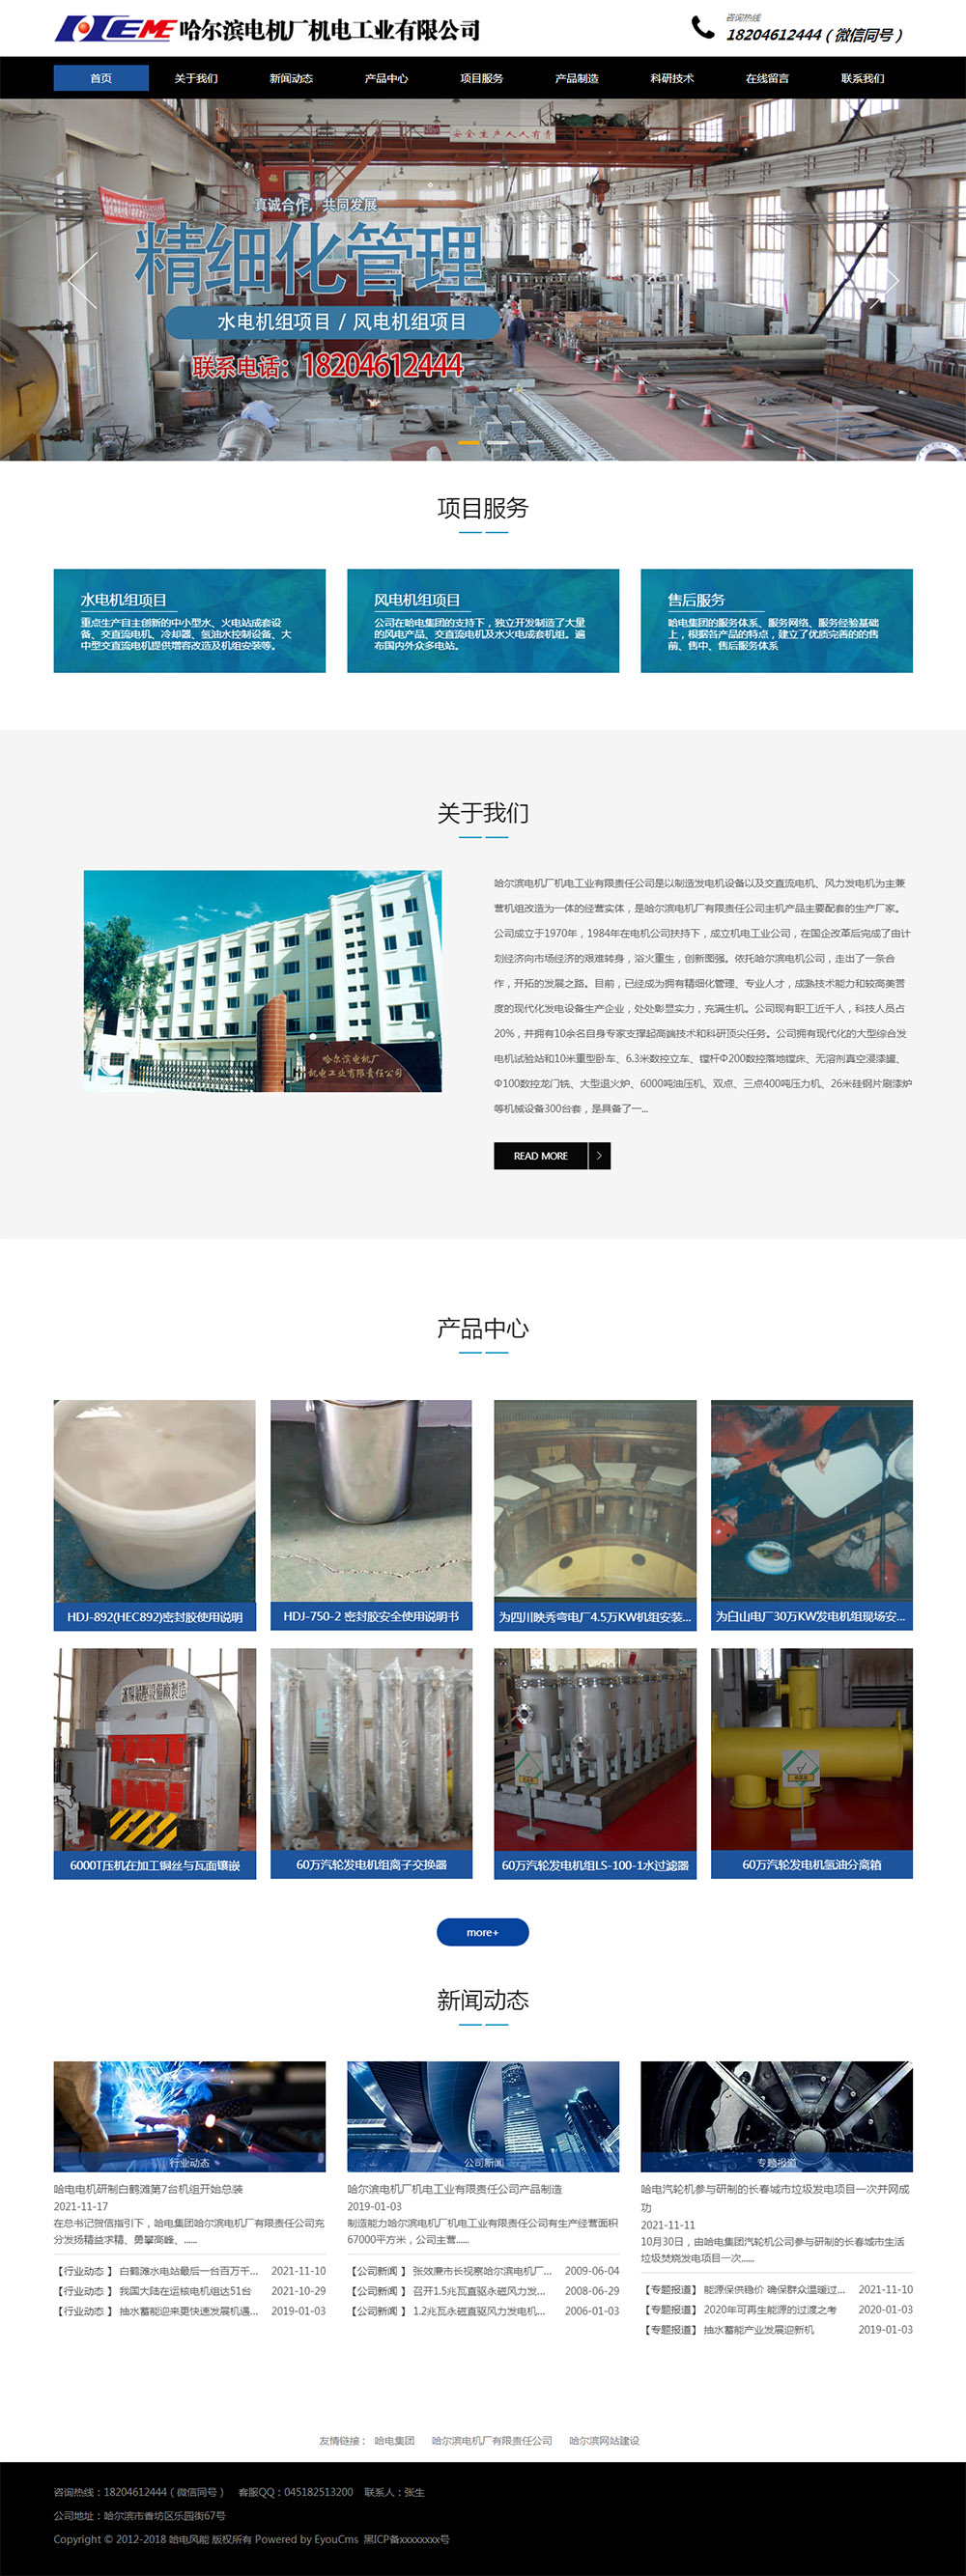 哈尔滨电机厂机电工业有限责任公司首页展示图片